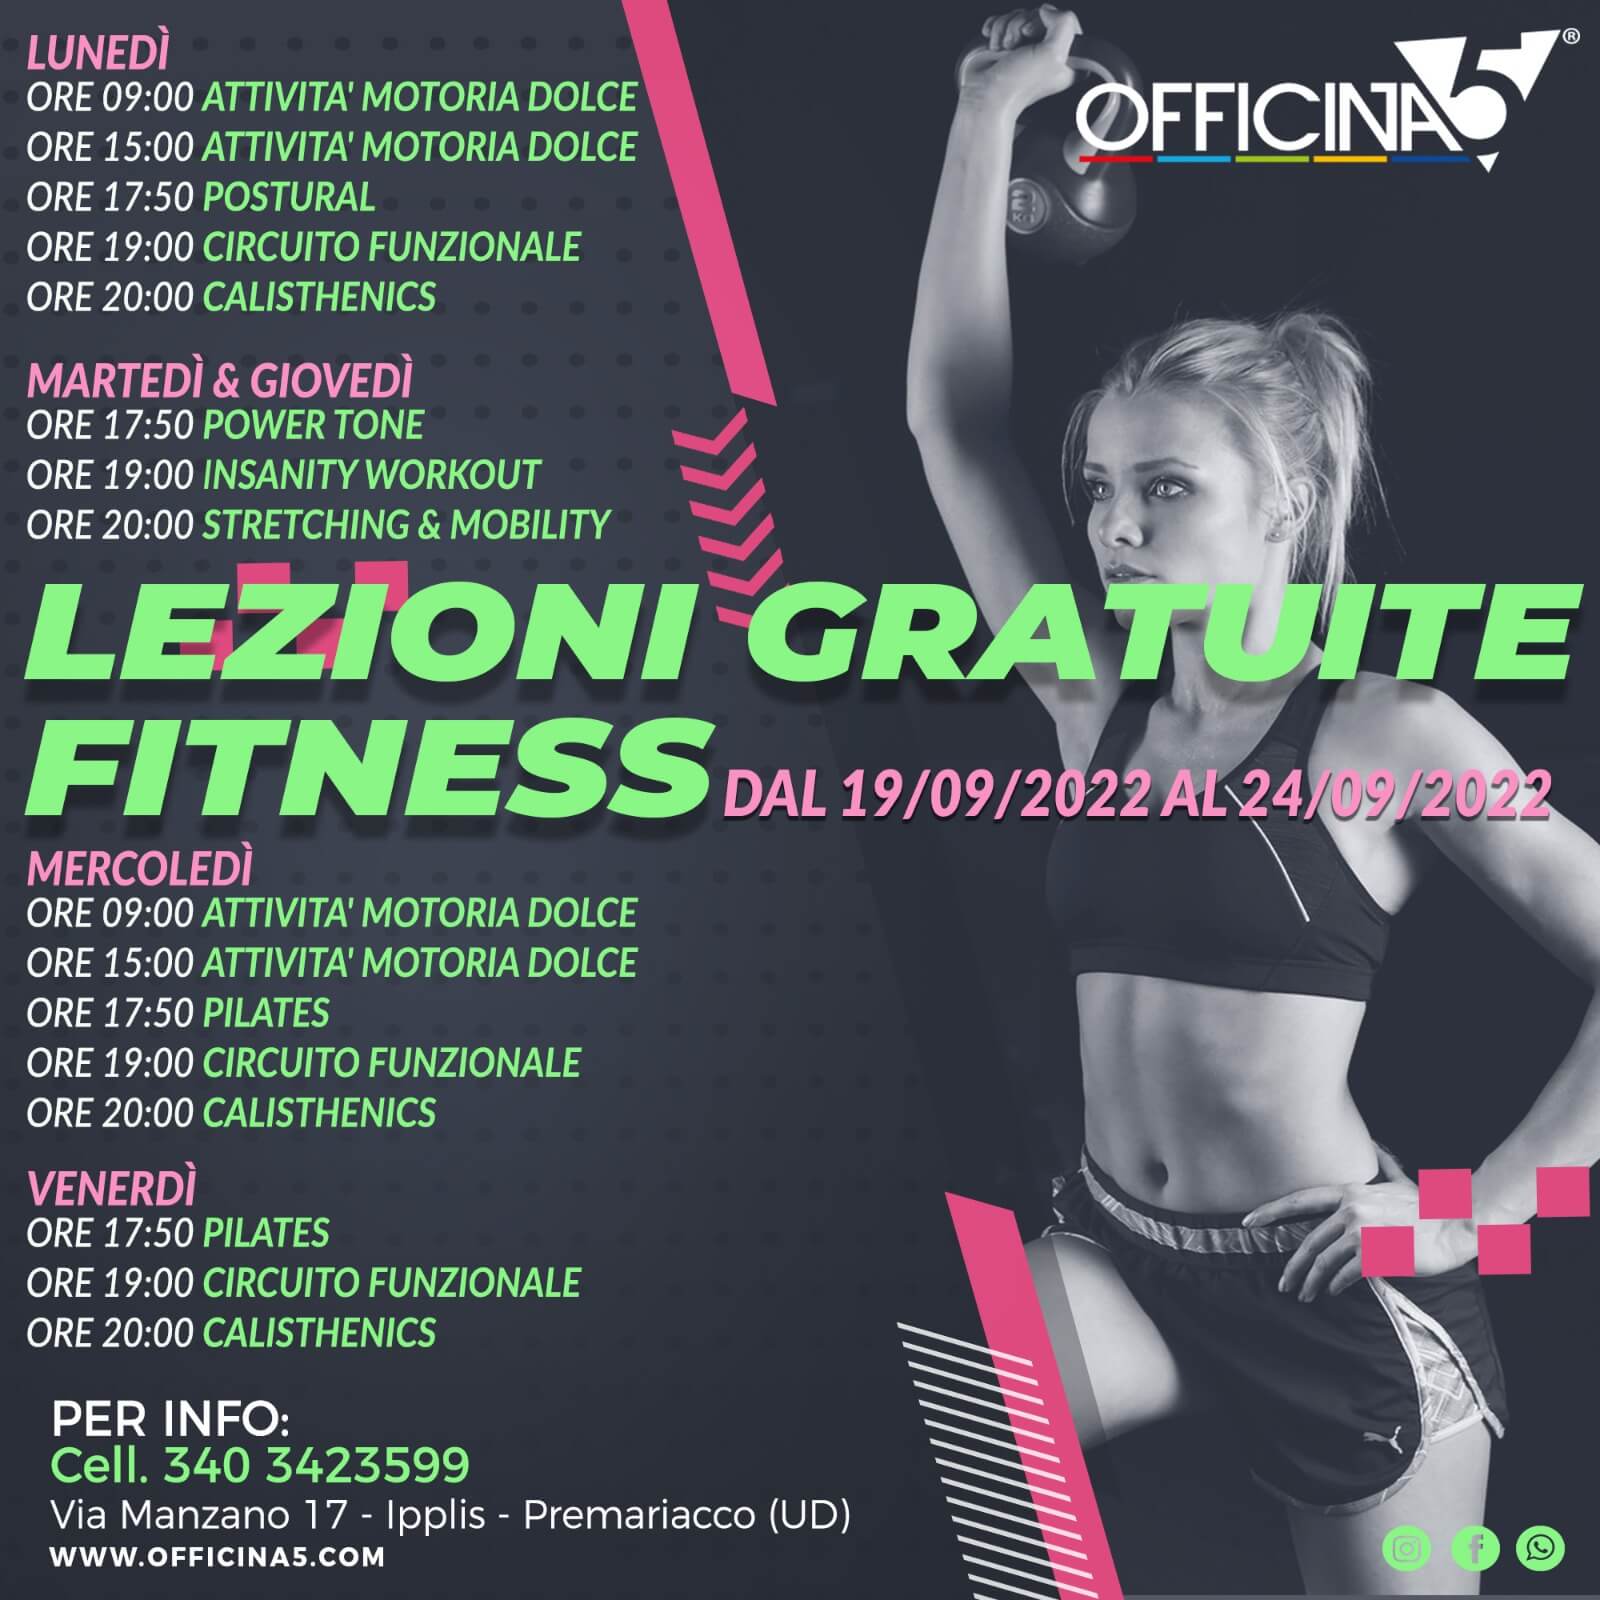 Lezioni gratuite di prova di fitness da OFFICINA5 a Ipplis di Premariacco